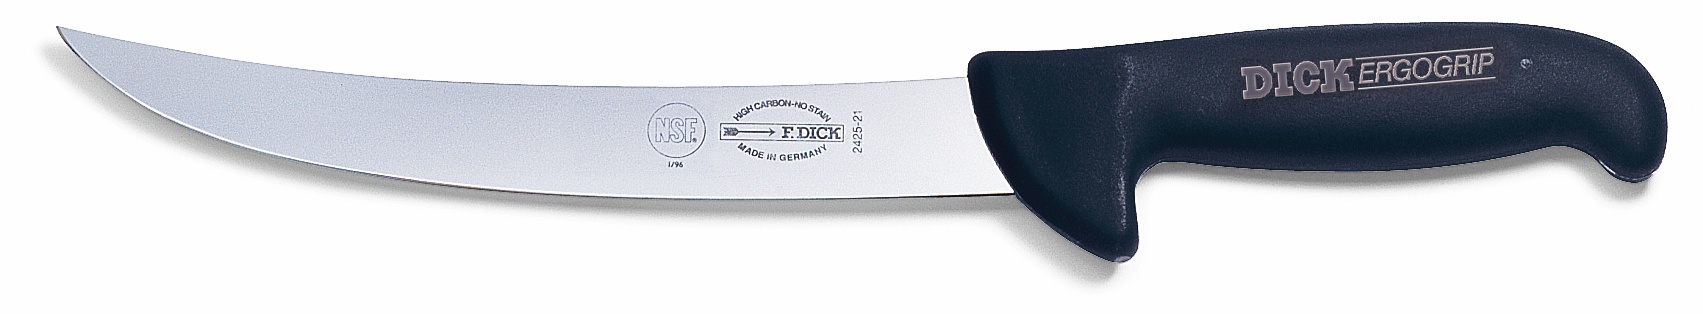 Porcovací nůž, černý v délce 21 cm